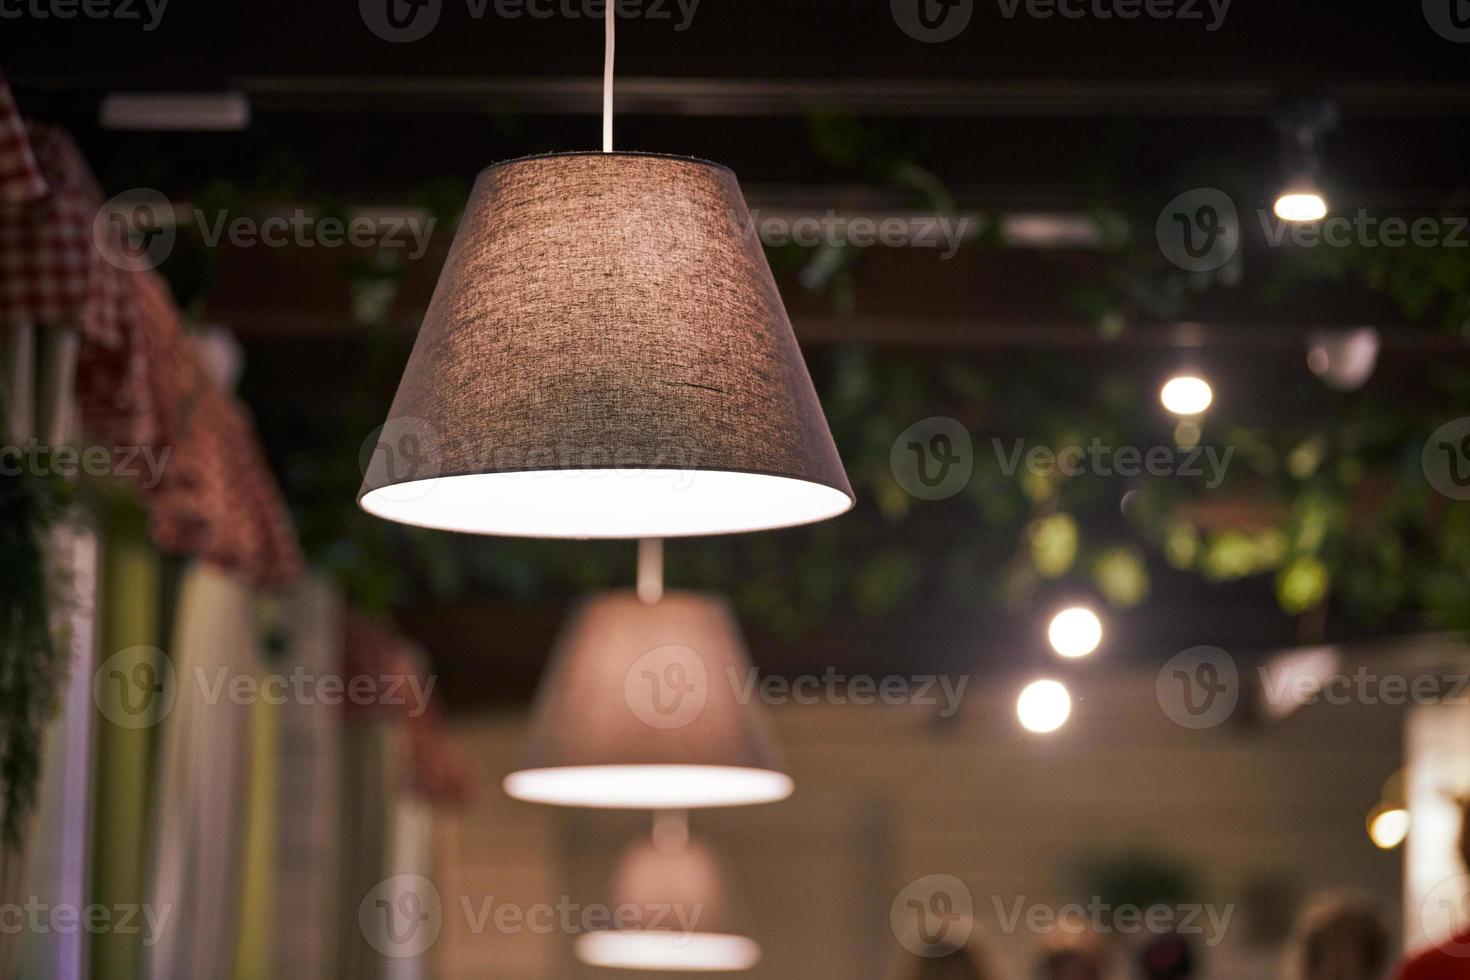 lampade a sospensione sopra i tavoli nel ristorante. sospensione moderna bassa luce calda dimmerata con paralumi foto